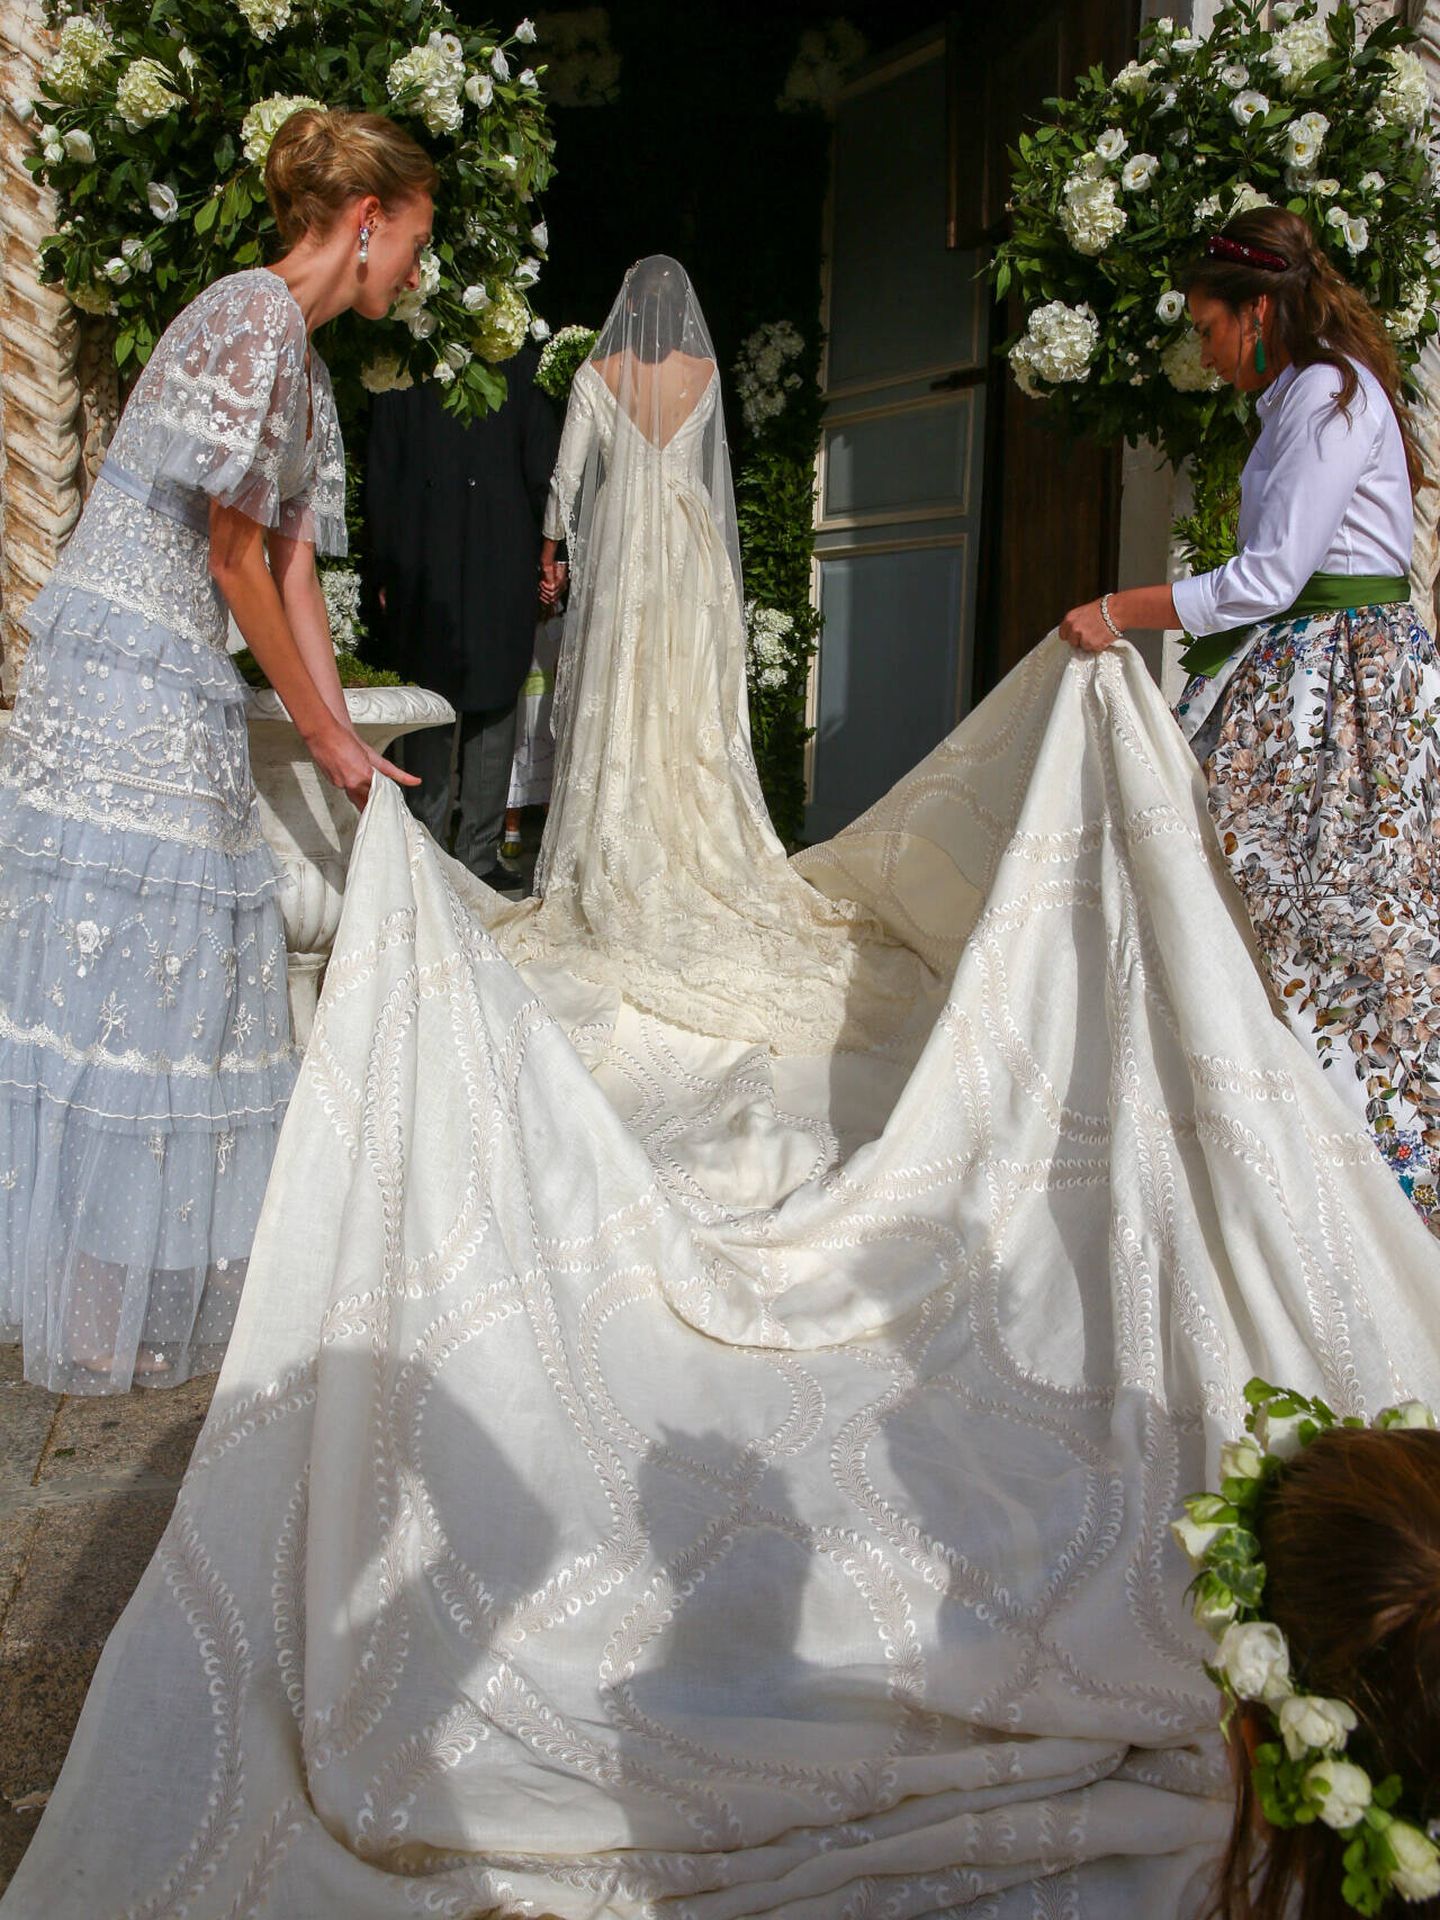 La larga cola del vestido de novia. (Gtres)